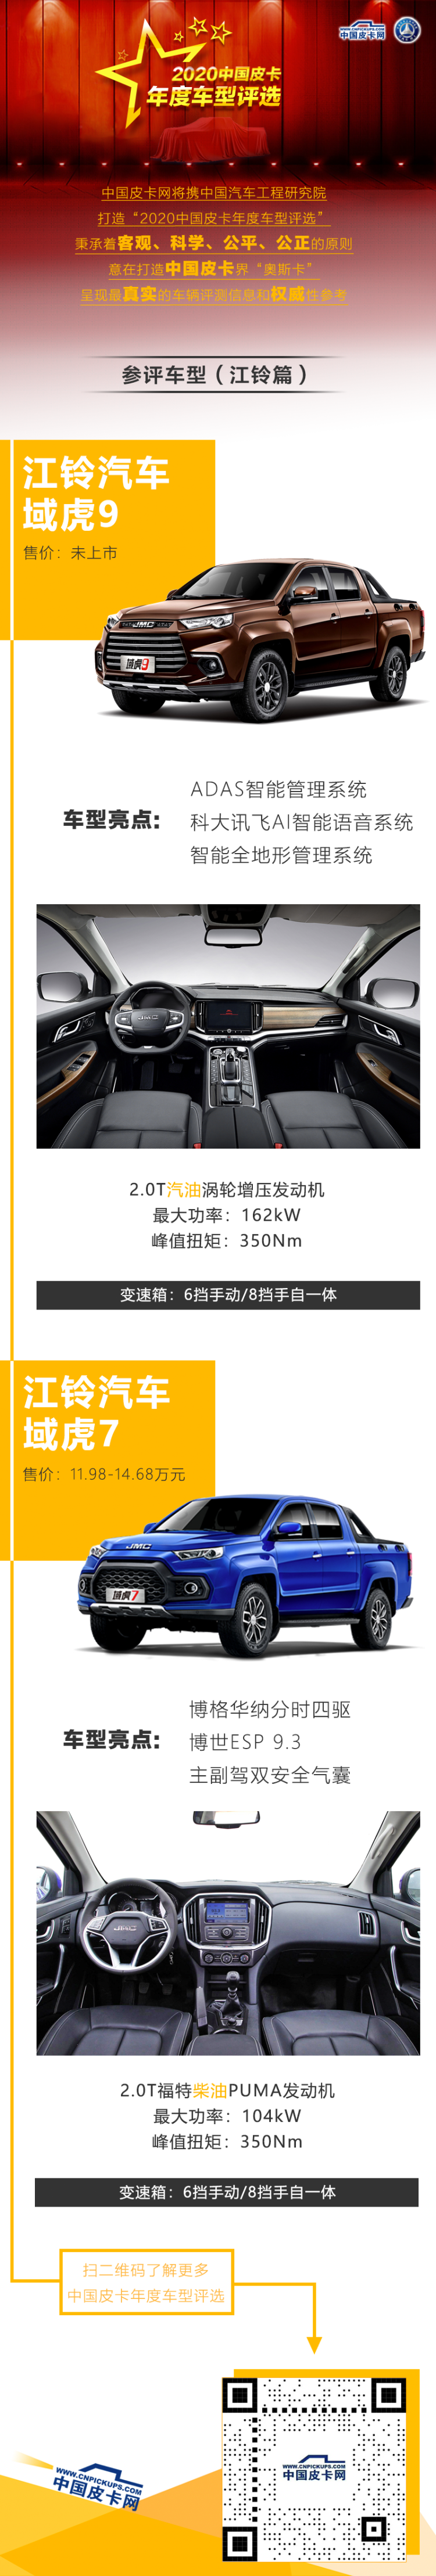 江铃两款车型参评“2020中国皮卡年度车型评选”